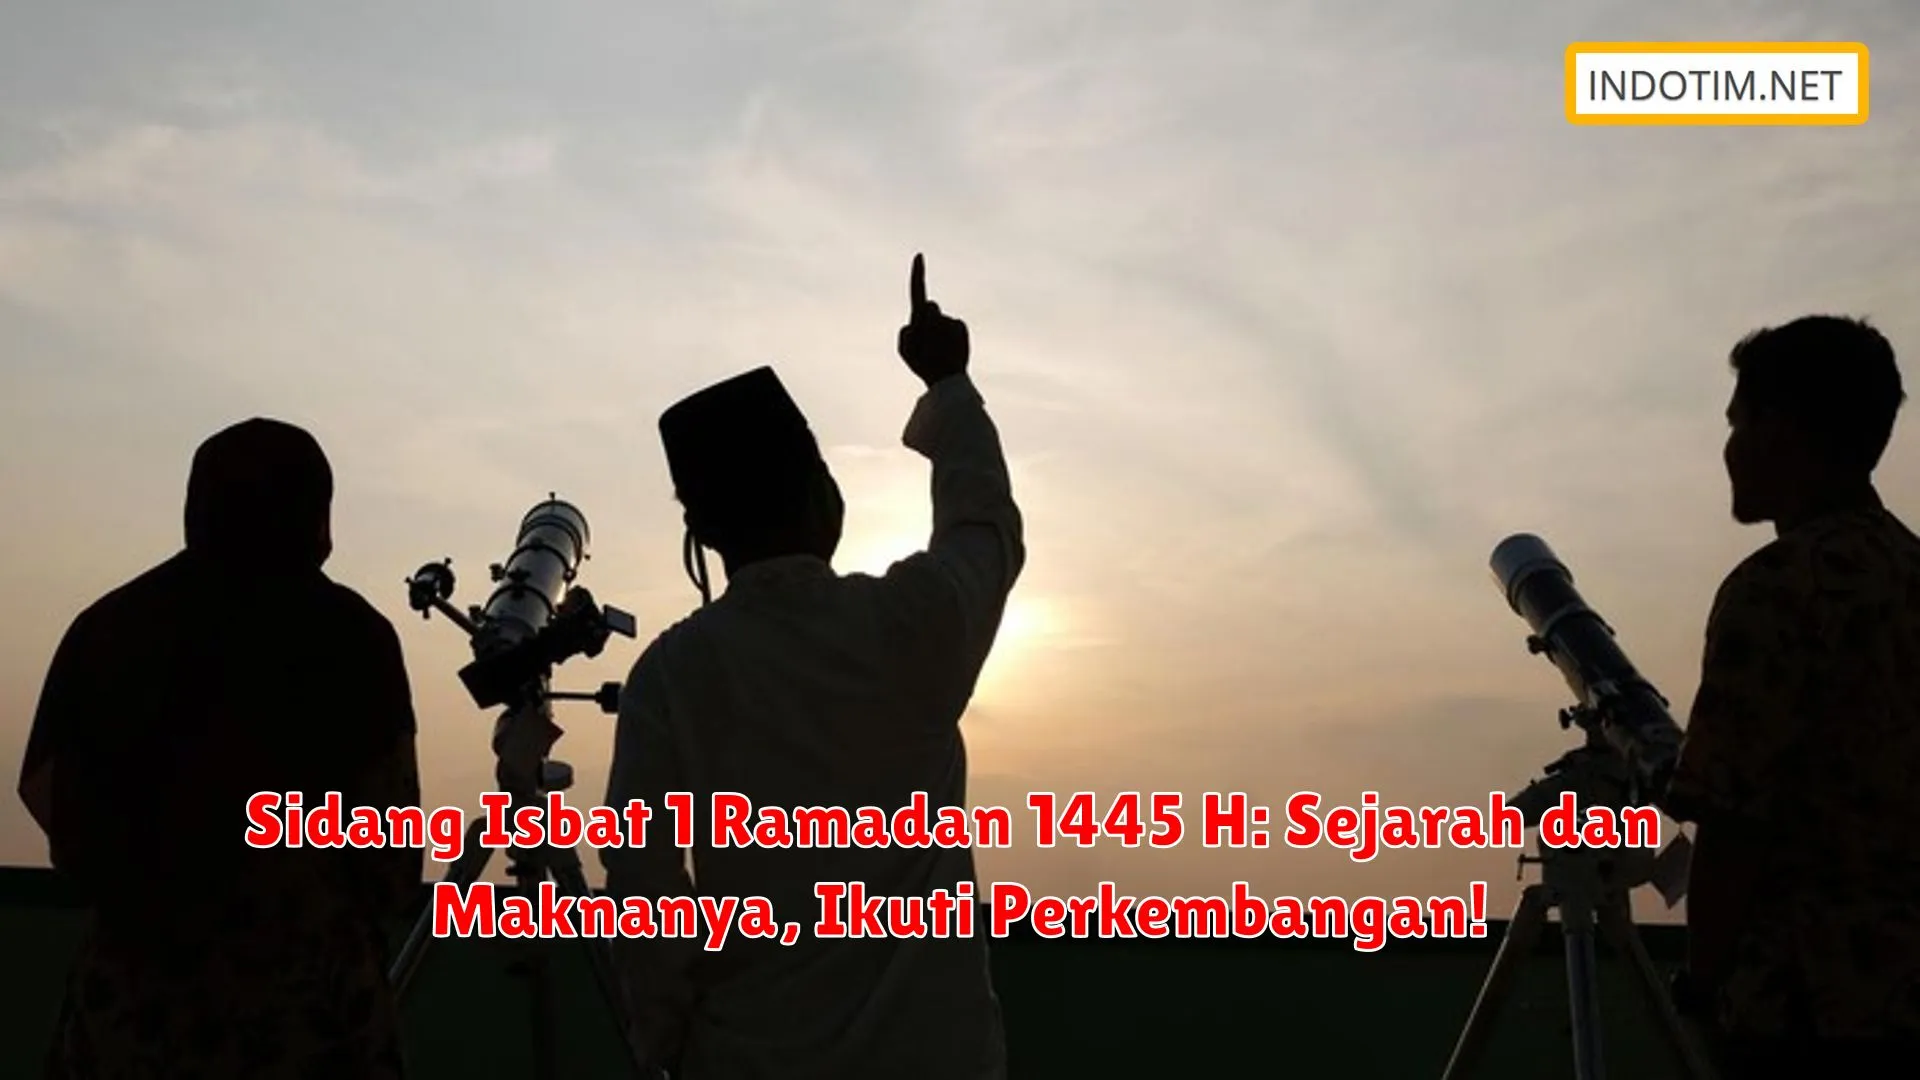 Sidang Isbat 1 Ramadan 1445 H: Sejarah dan Maknanya, Ikuti Perkembangan!